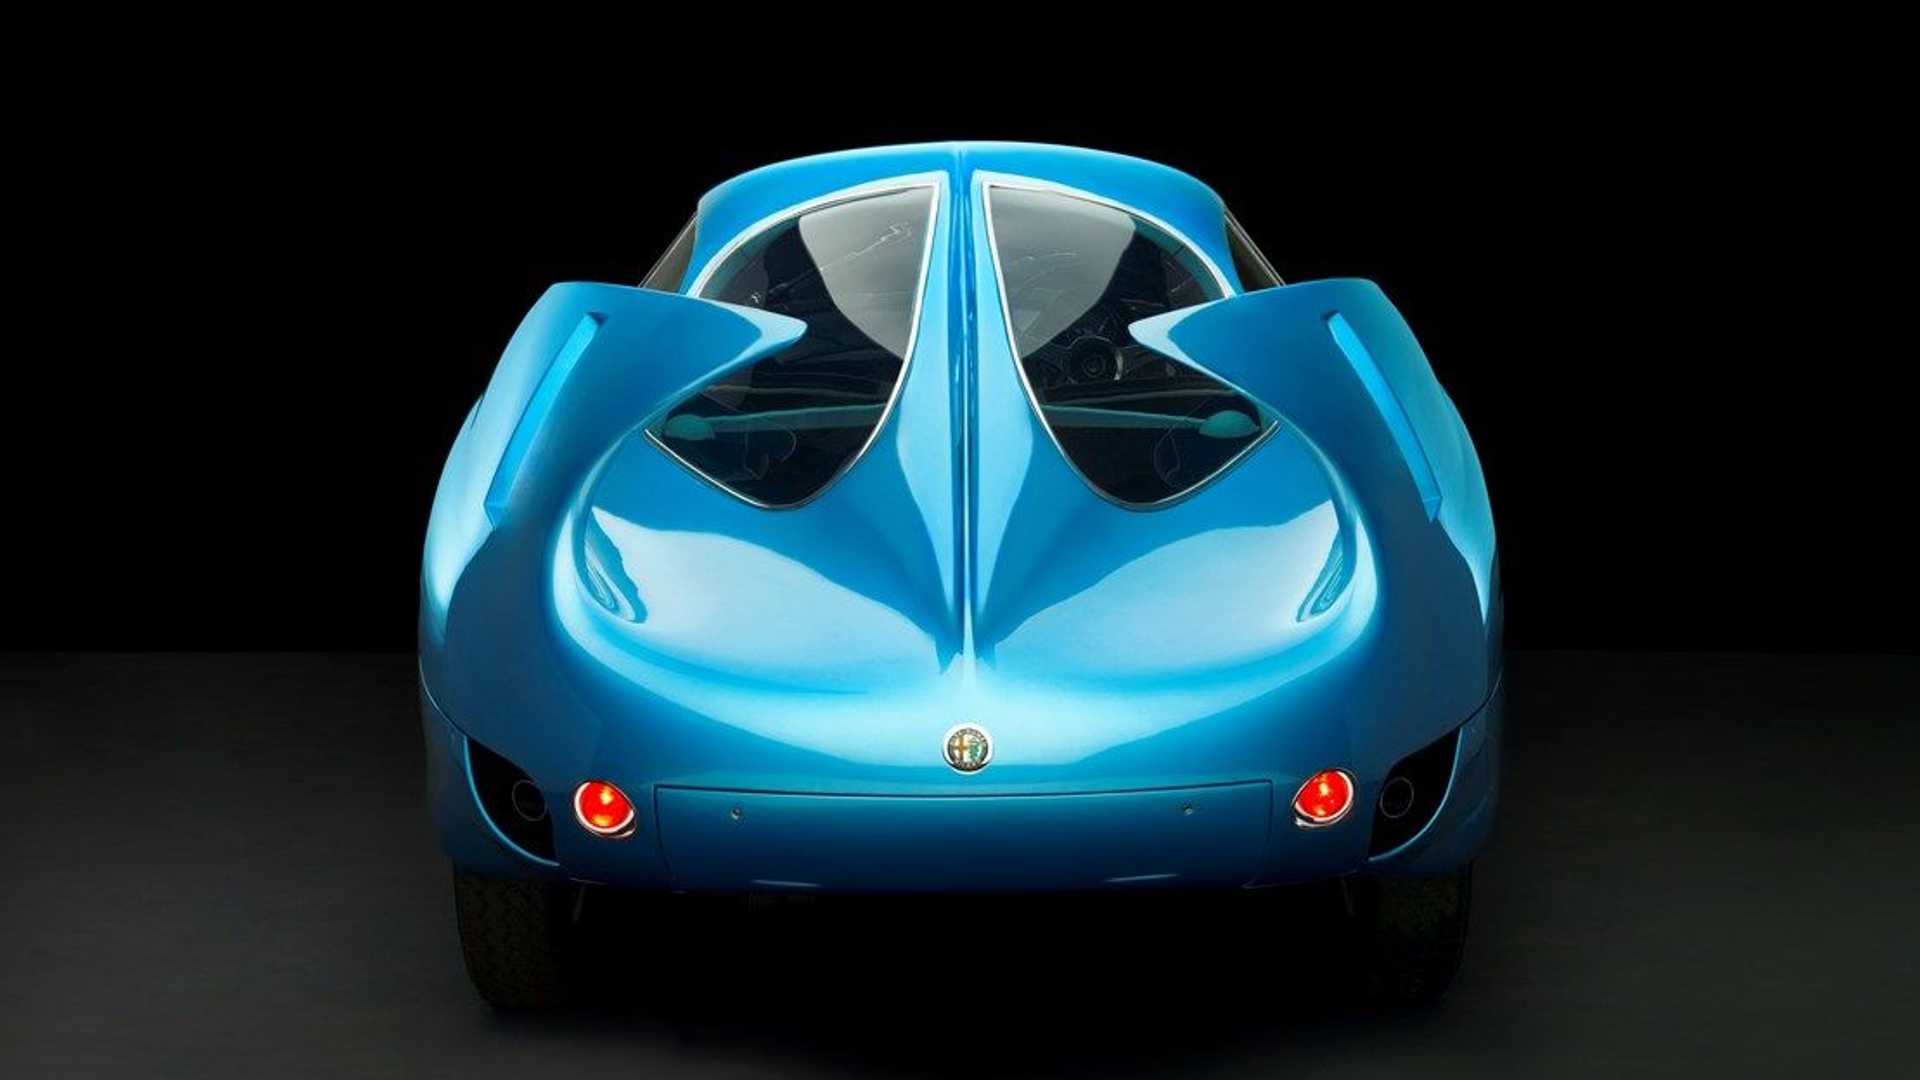 نمای عقب خودروی مفهومی آلفا رومئو / Alfa Romeo B.A.T. Concept Car با رنگ آبی